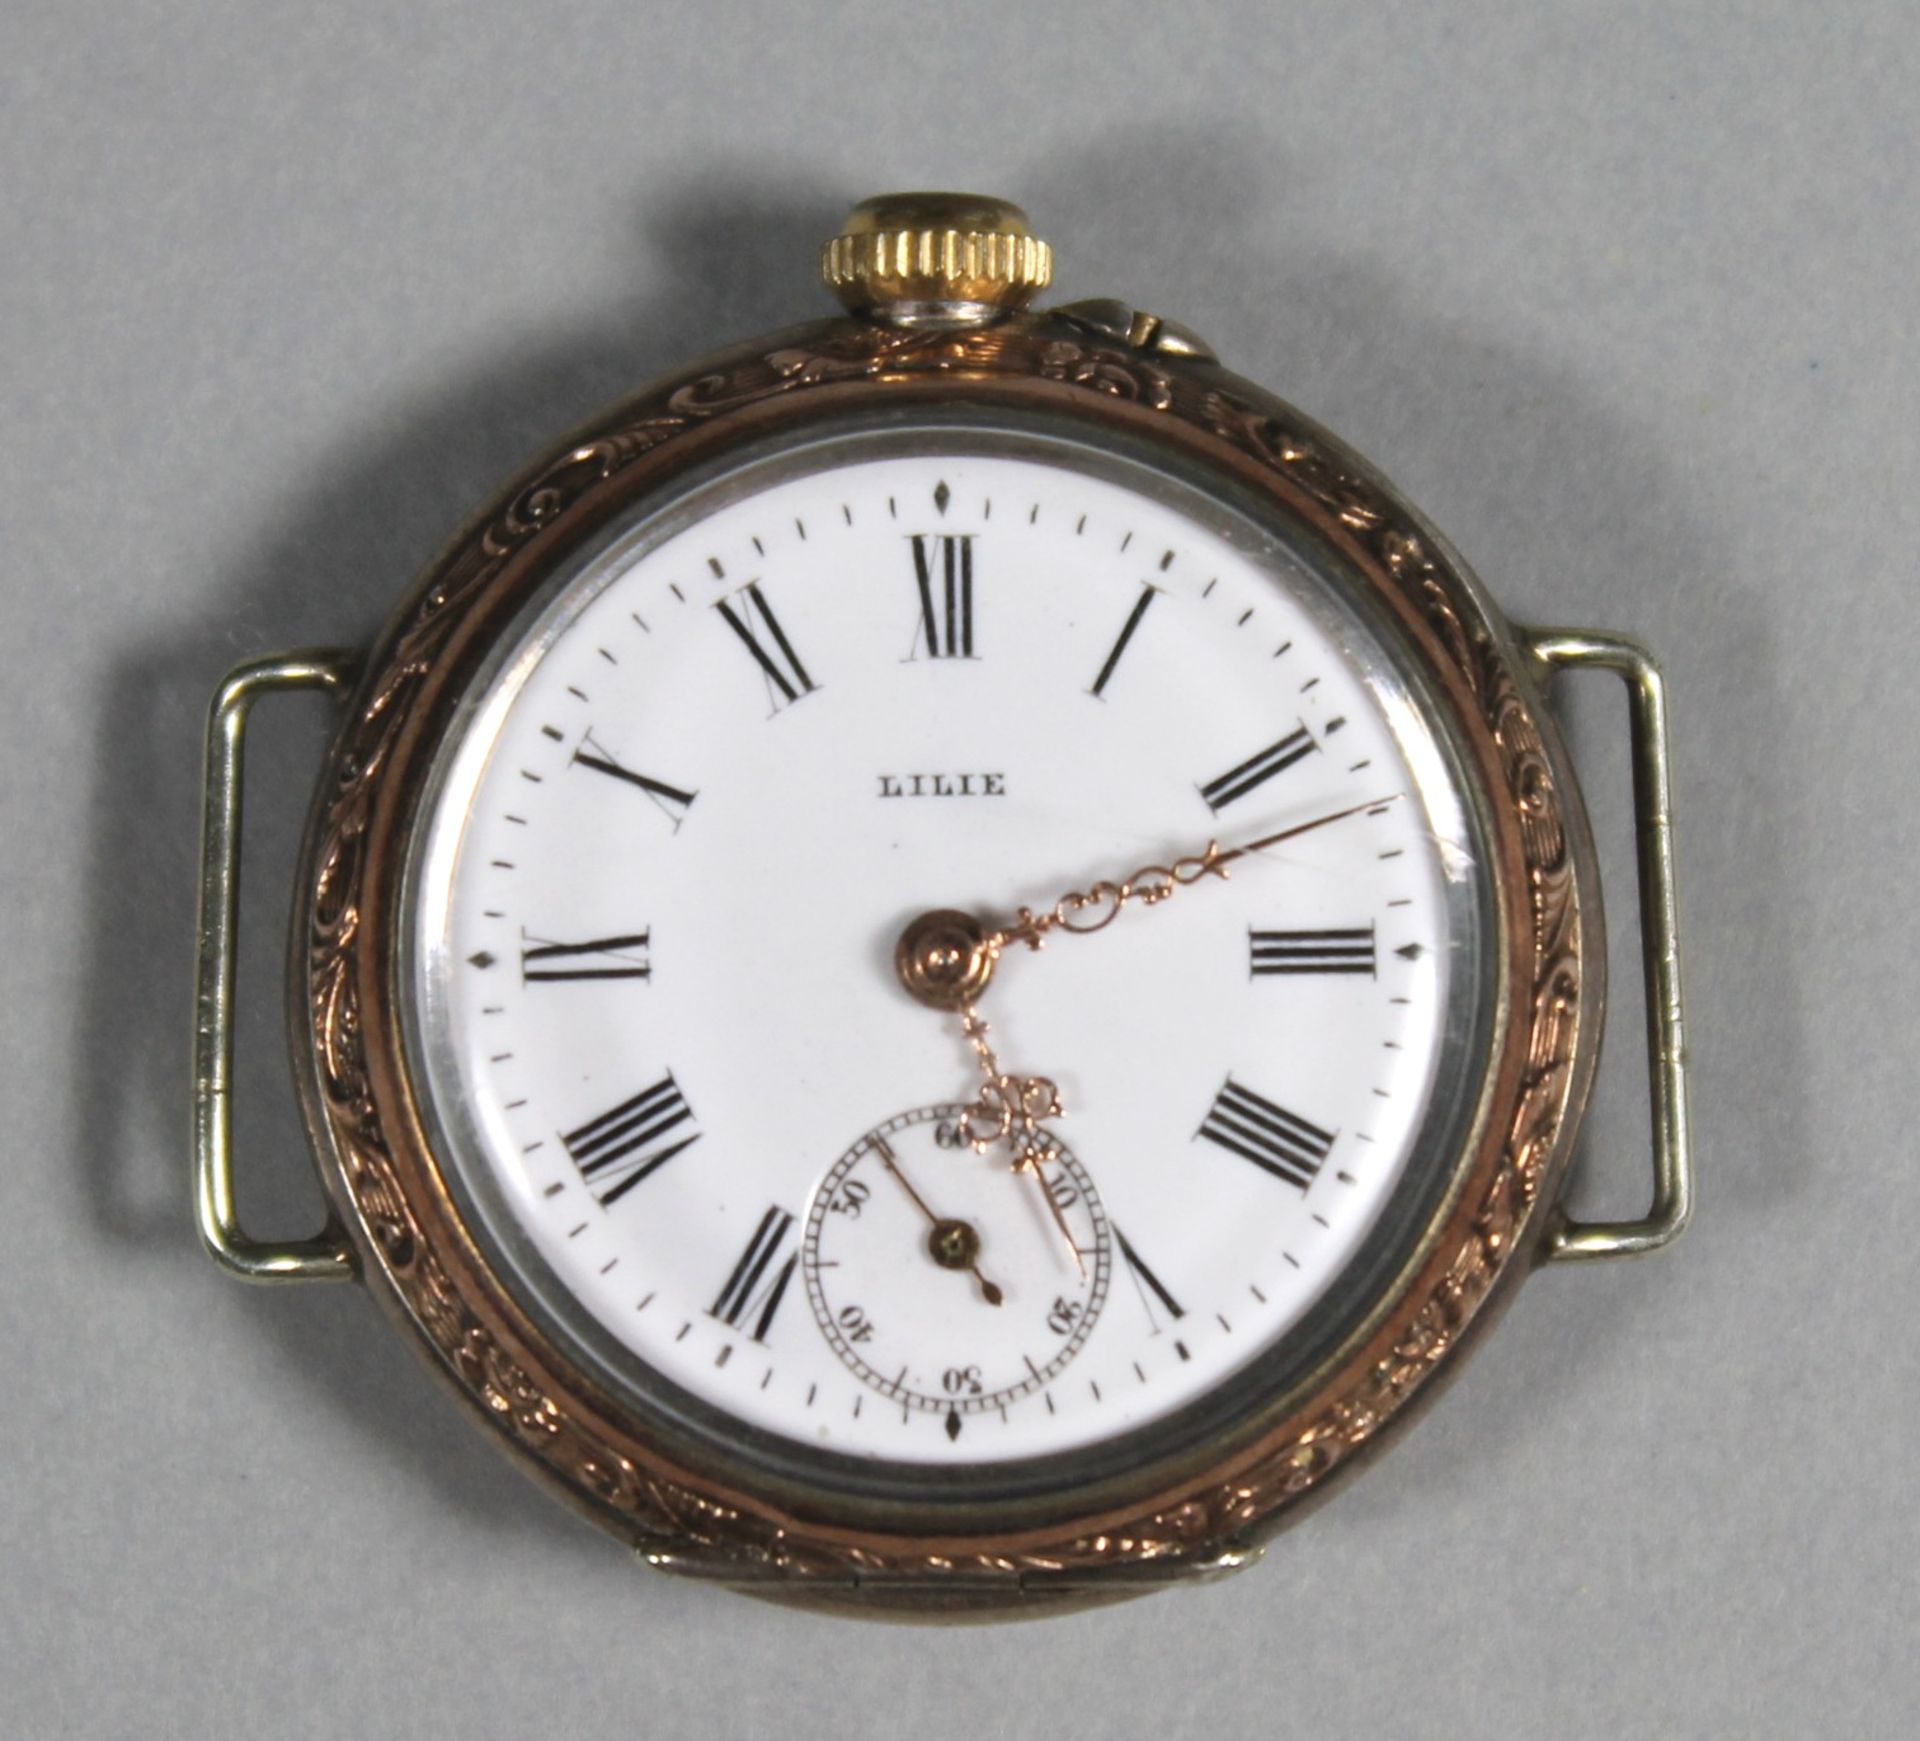 1 Damenarmbanduhr ohne Armband Silber (800/000), diverse Punzen "Lilie", emailliertes Zifferblatt